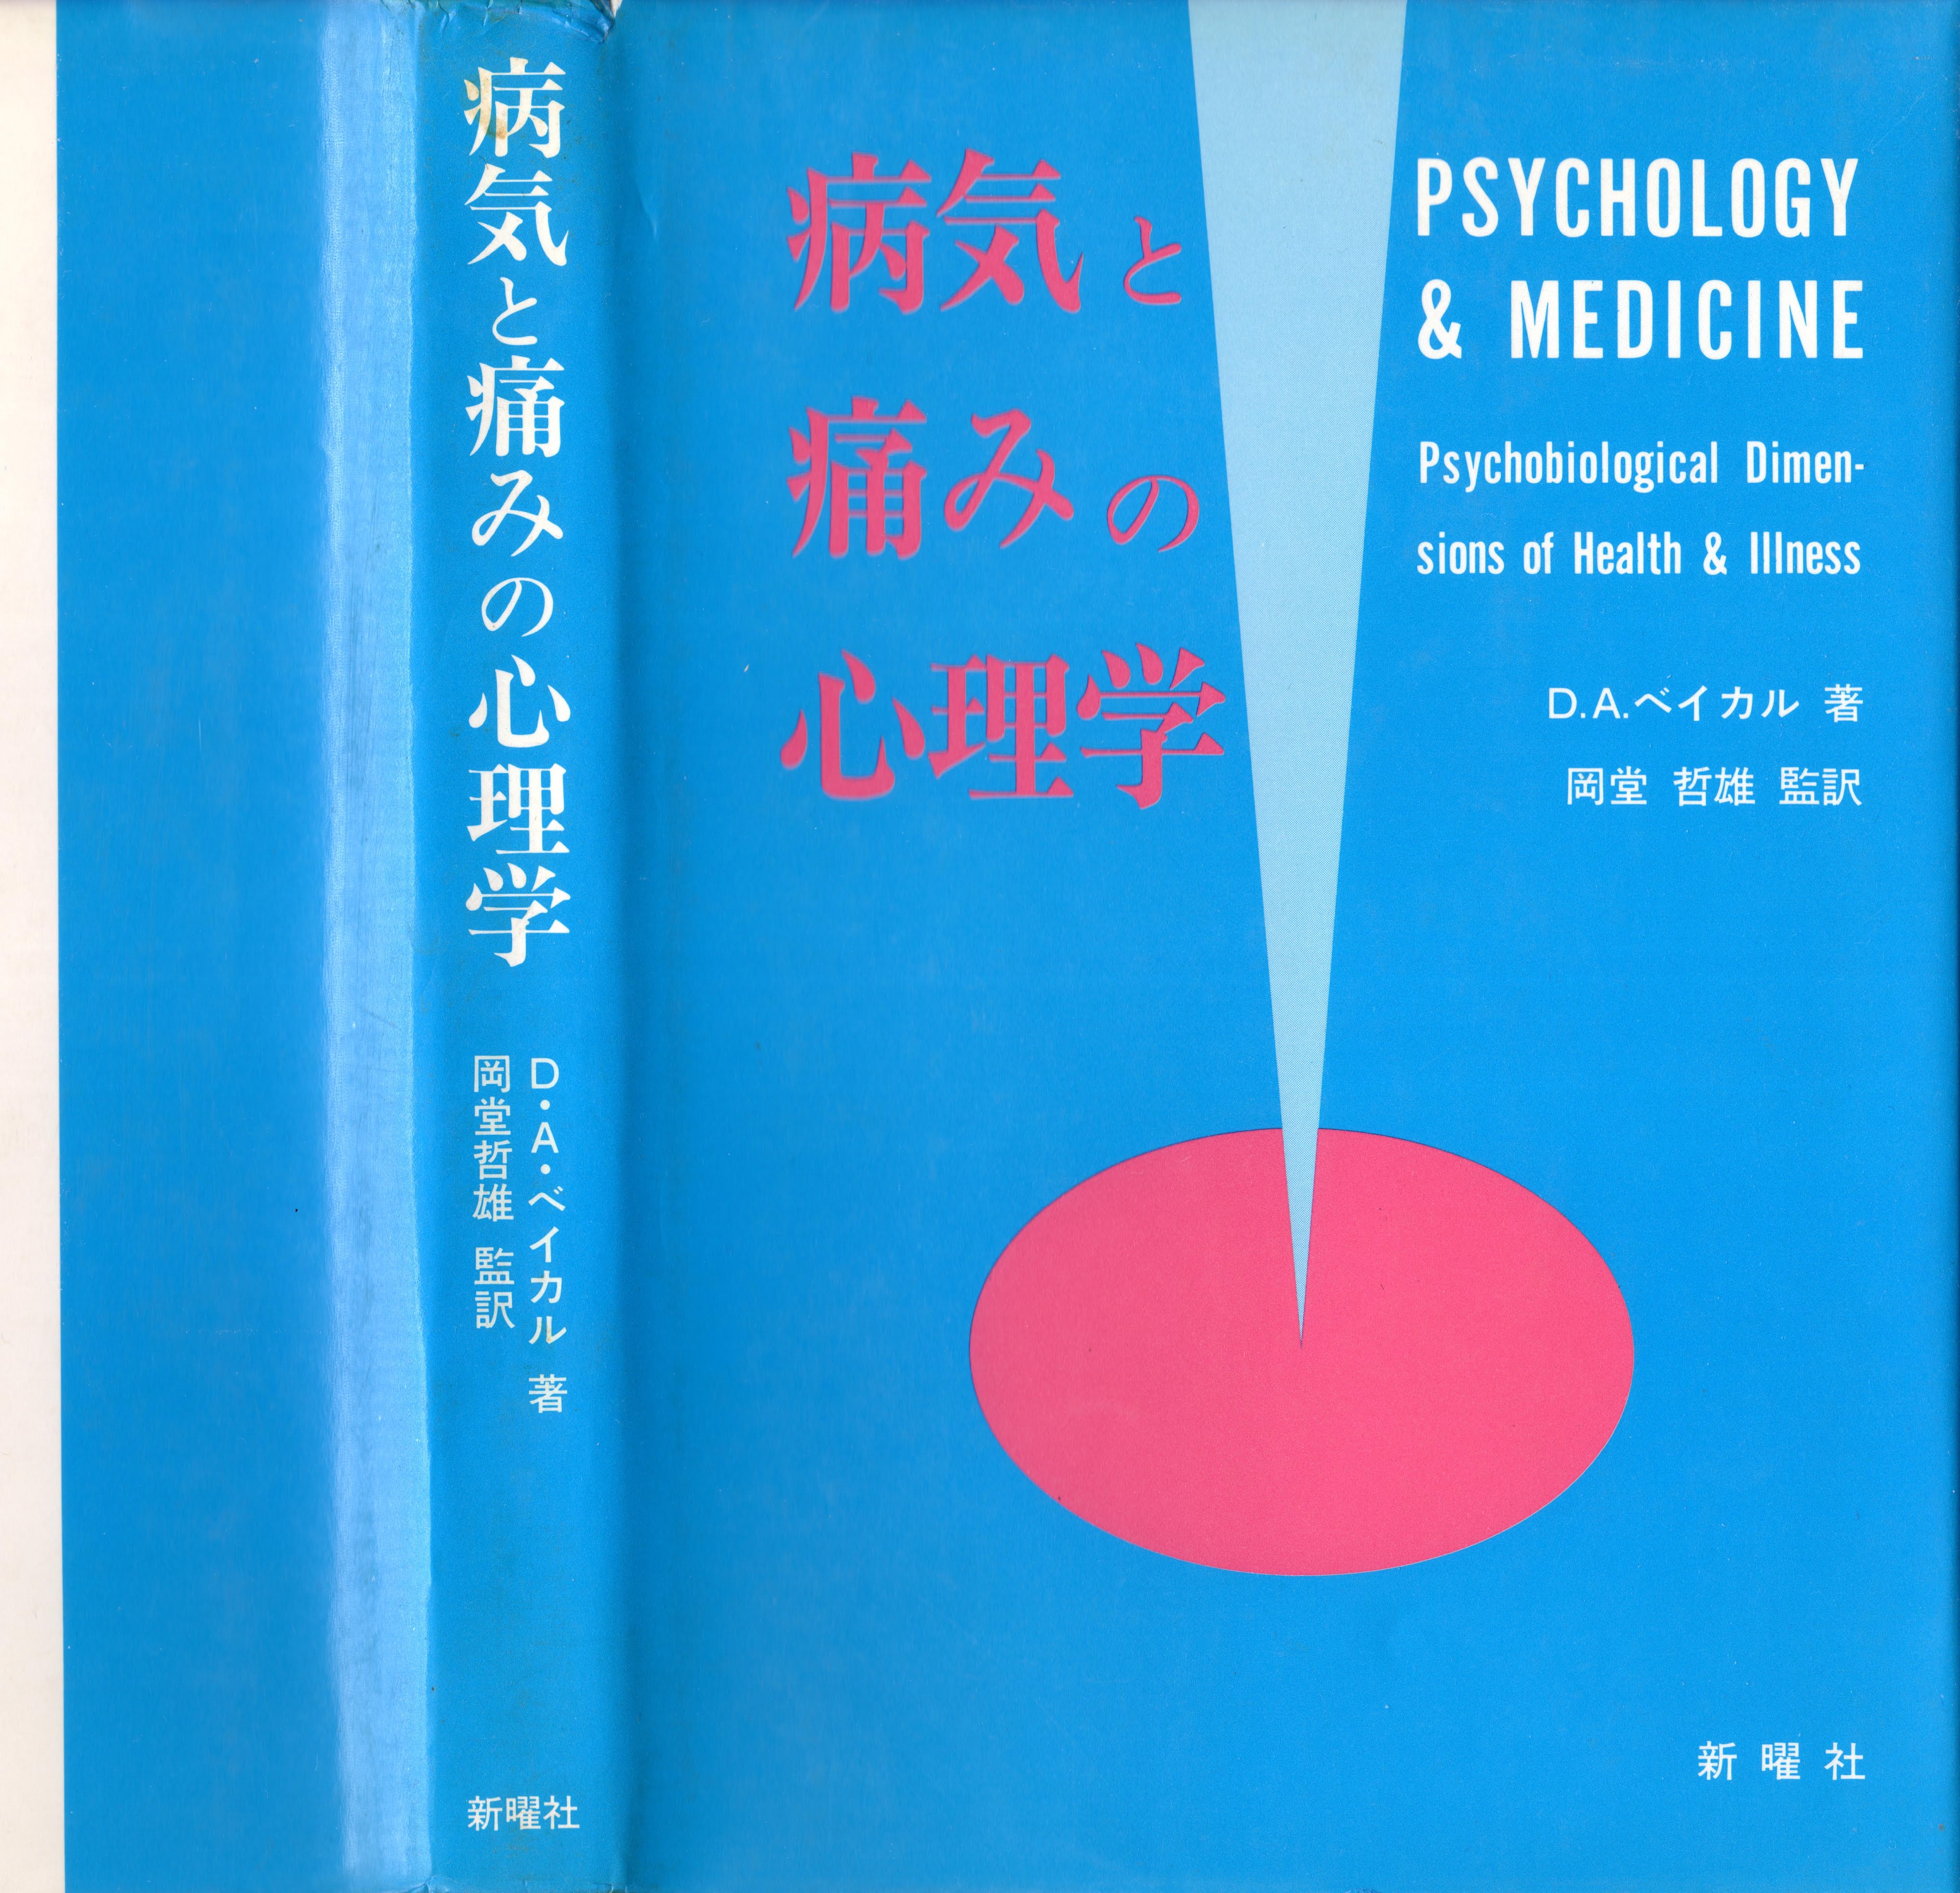 PSYCHOLOGY & MEDICINE | Psychobiological Dimensions of Health & Illness | 病気と痛みの心理学 | D・A・ベイカル 著 | 岡堂 哲雄 監訳 | 新曜社